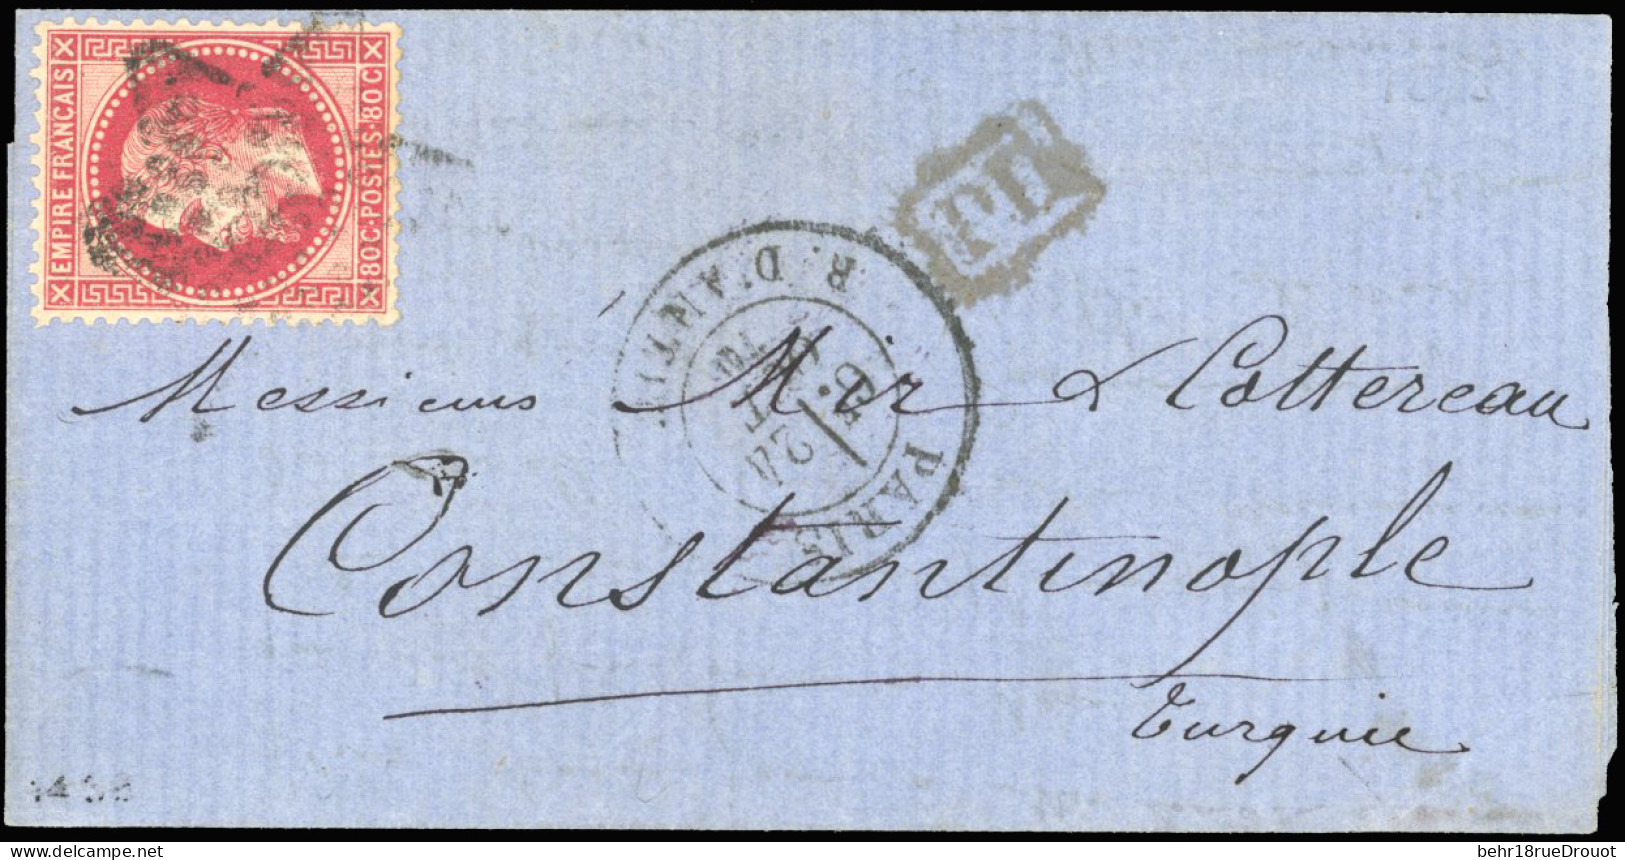 Obl. 32 - LE MONTGOLFIER. 80c. Rose Obl. S/lettre Frappée Du CàD De PARIS - R. D'ANTIN Du 24 Octobre 1870 à Destination  - Guerra De 1870